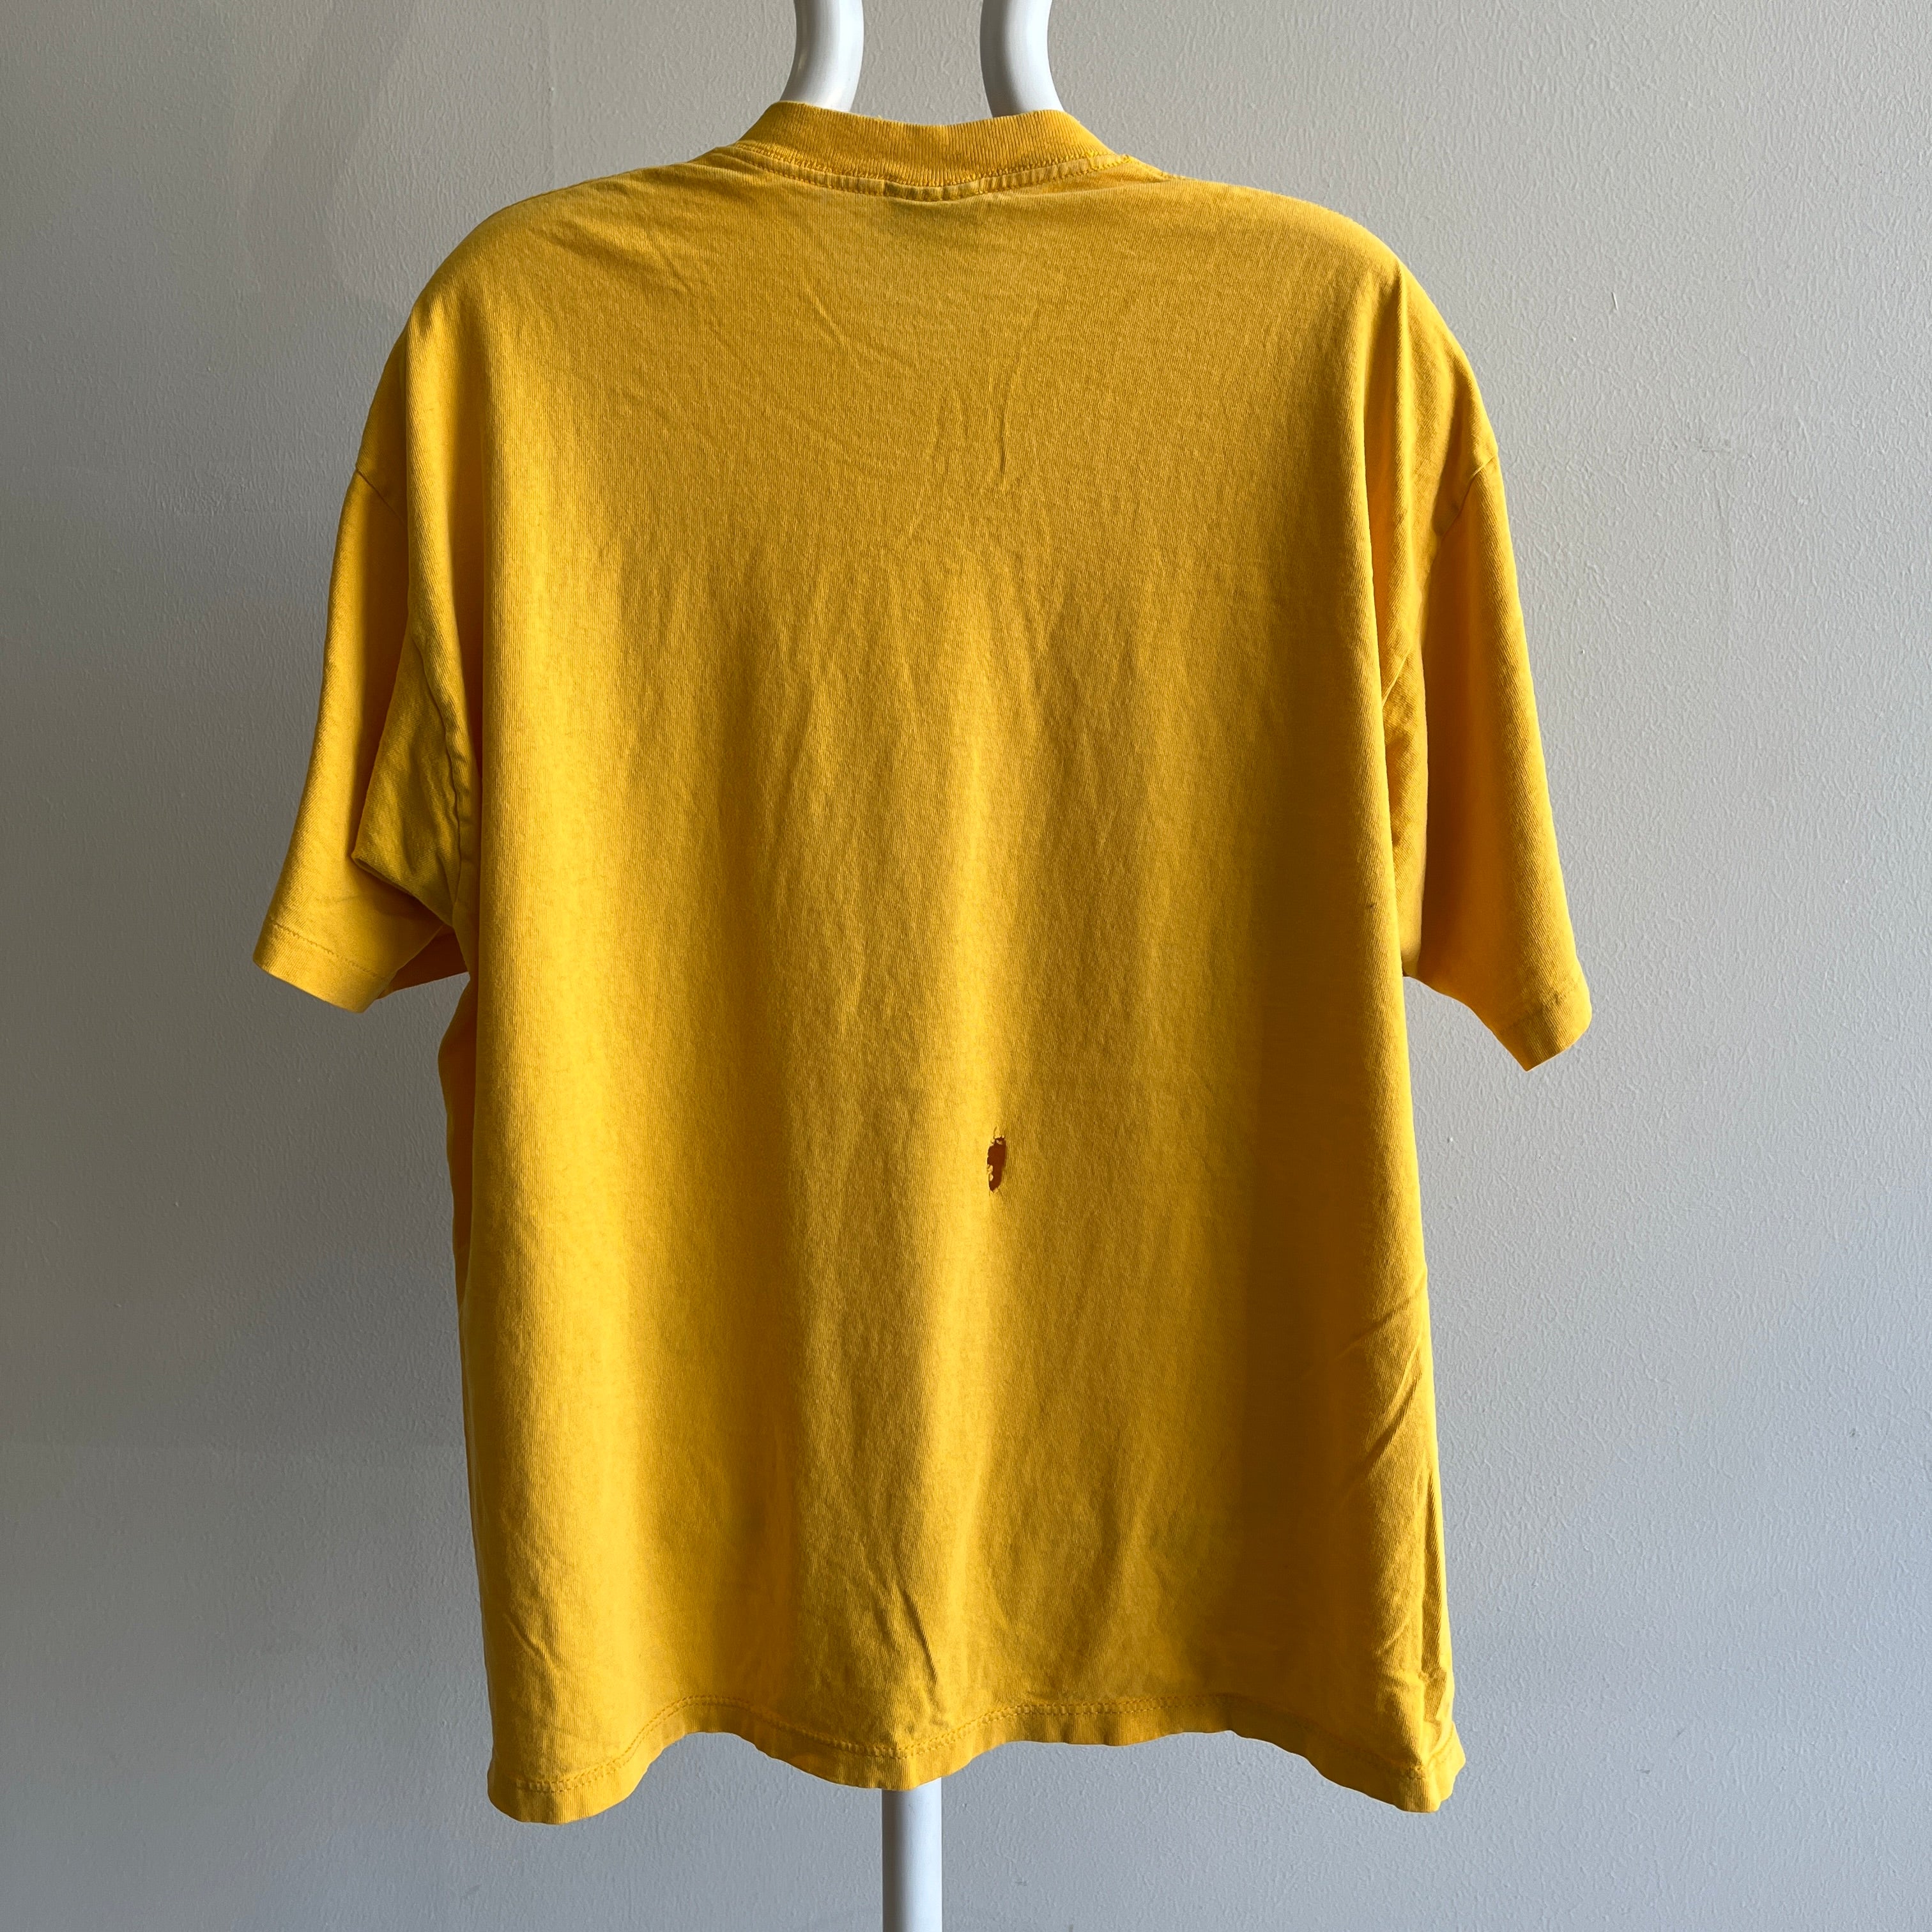 T-shirt en coton jaune souci super doux et usé des années 1990 par Soffe